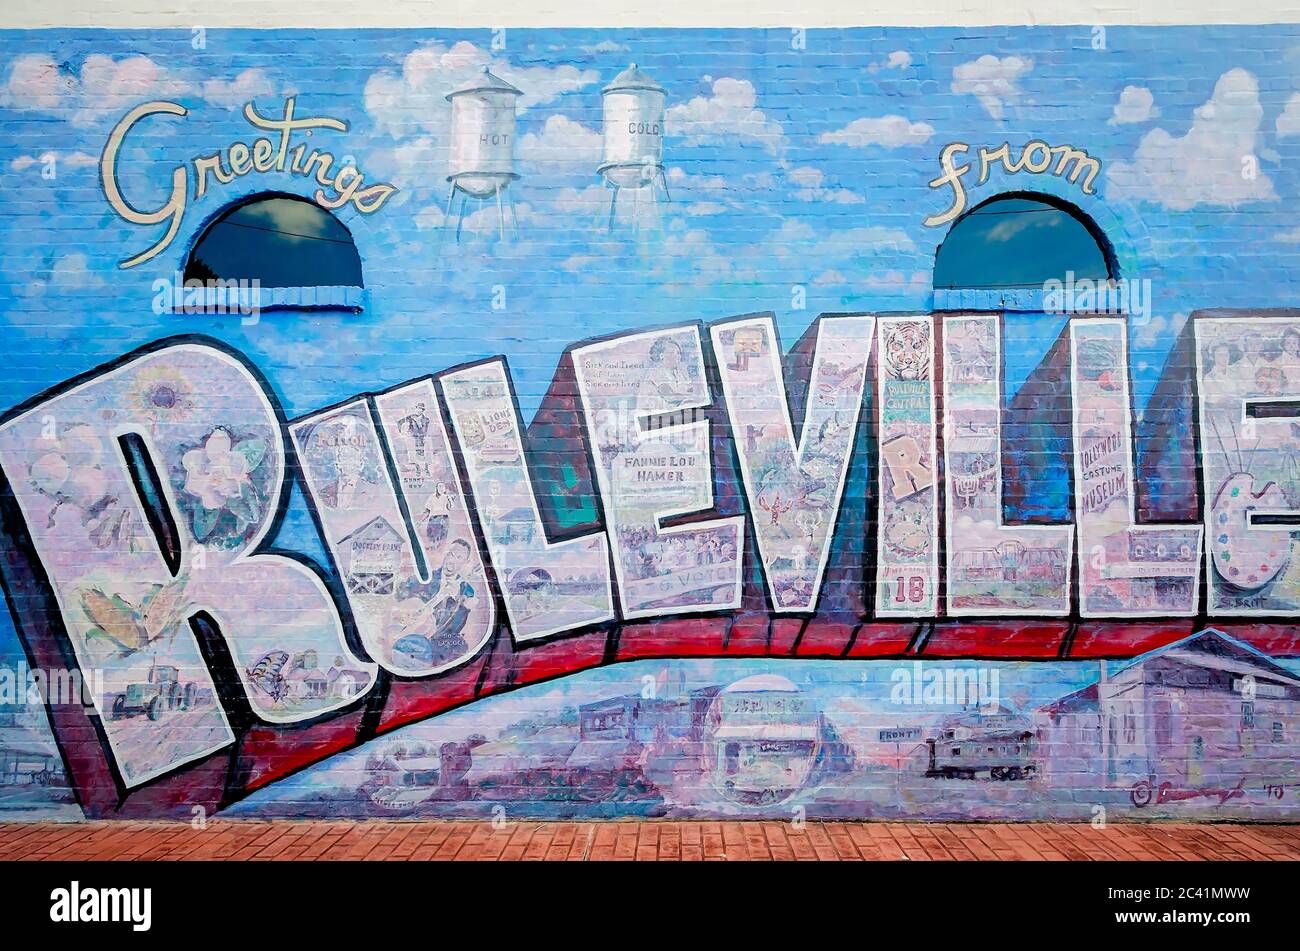 Ein Wandgemälde zeigt berühmte Ereignisse und Landschaften aus der Geschichte von Ruleville, 10. August 2016, in Ruleville, Mississippi. Stockfoto